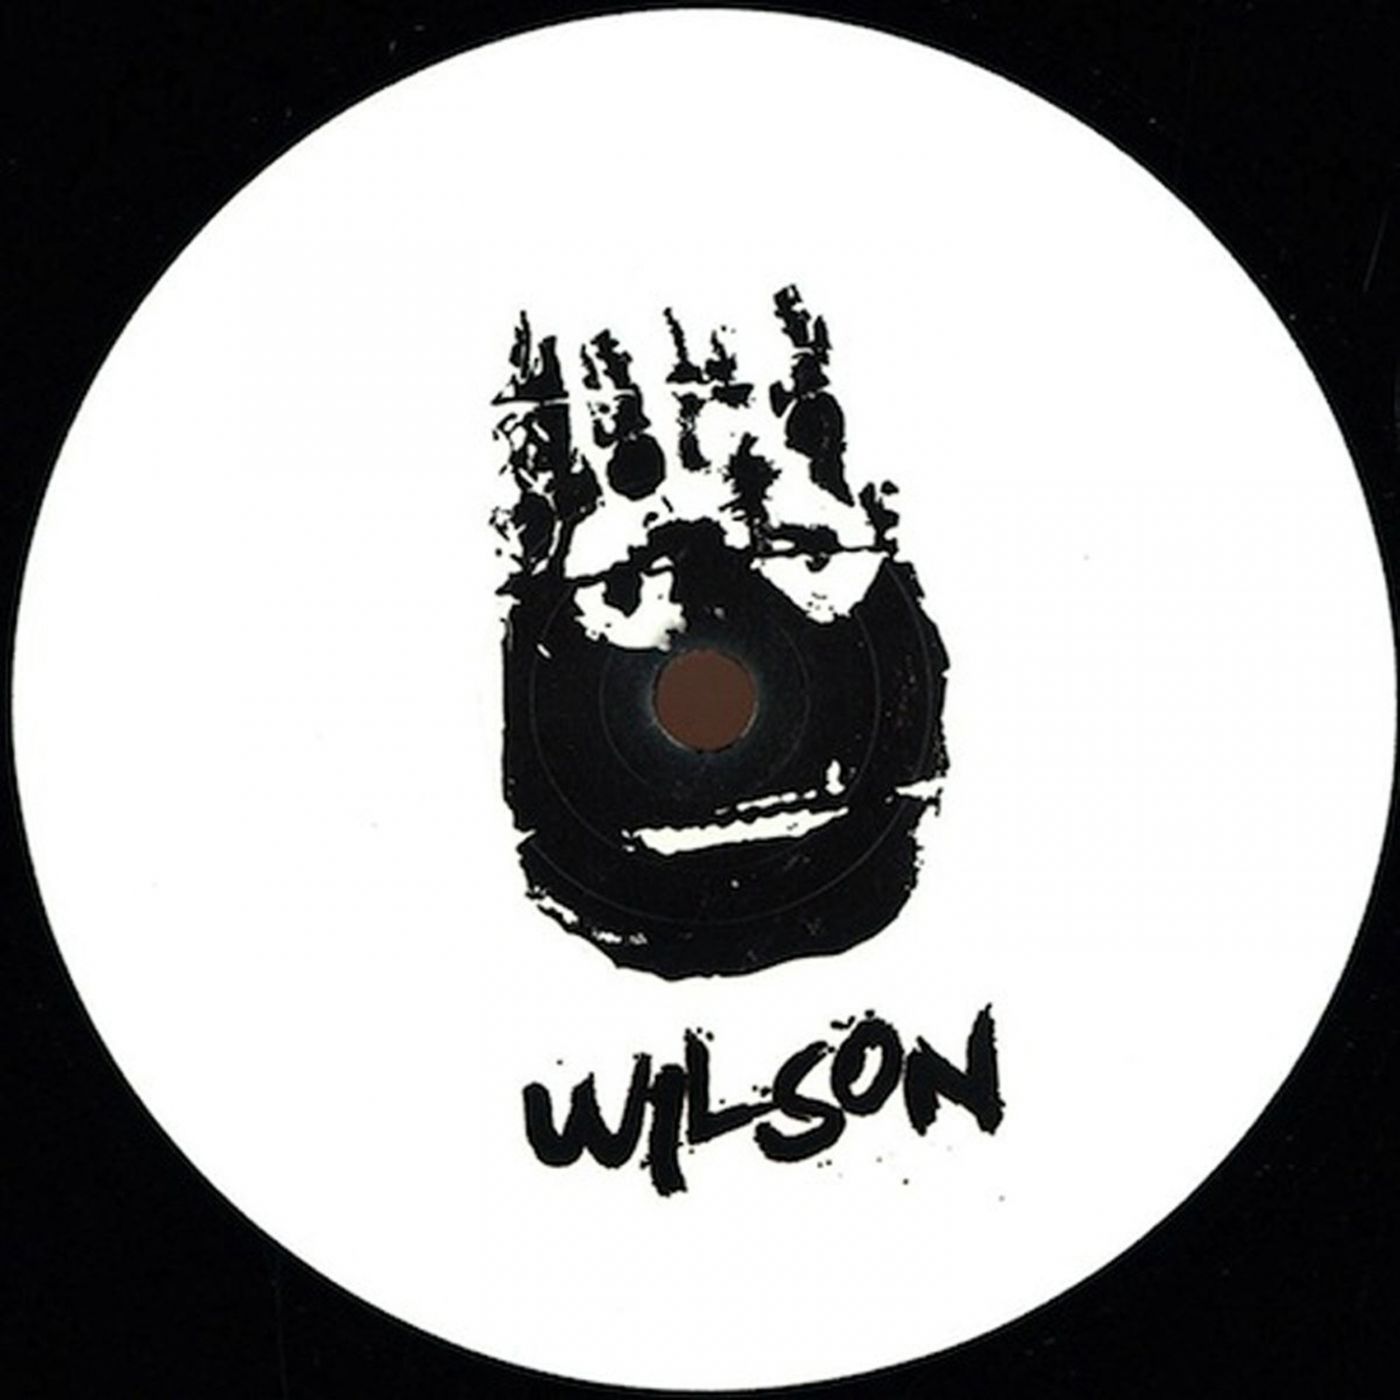 Wilson Records